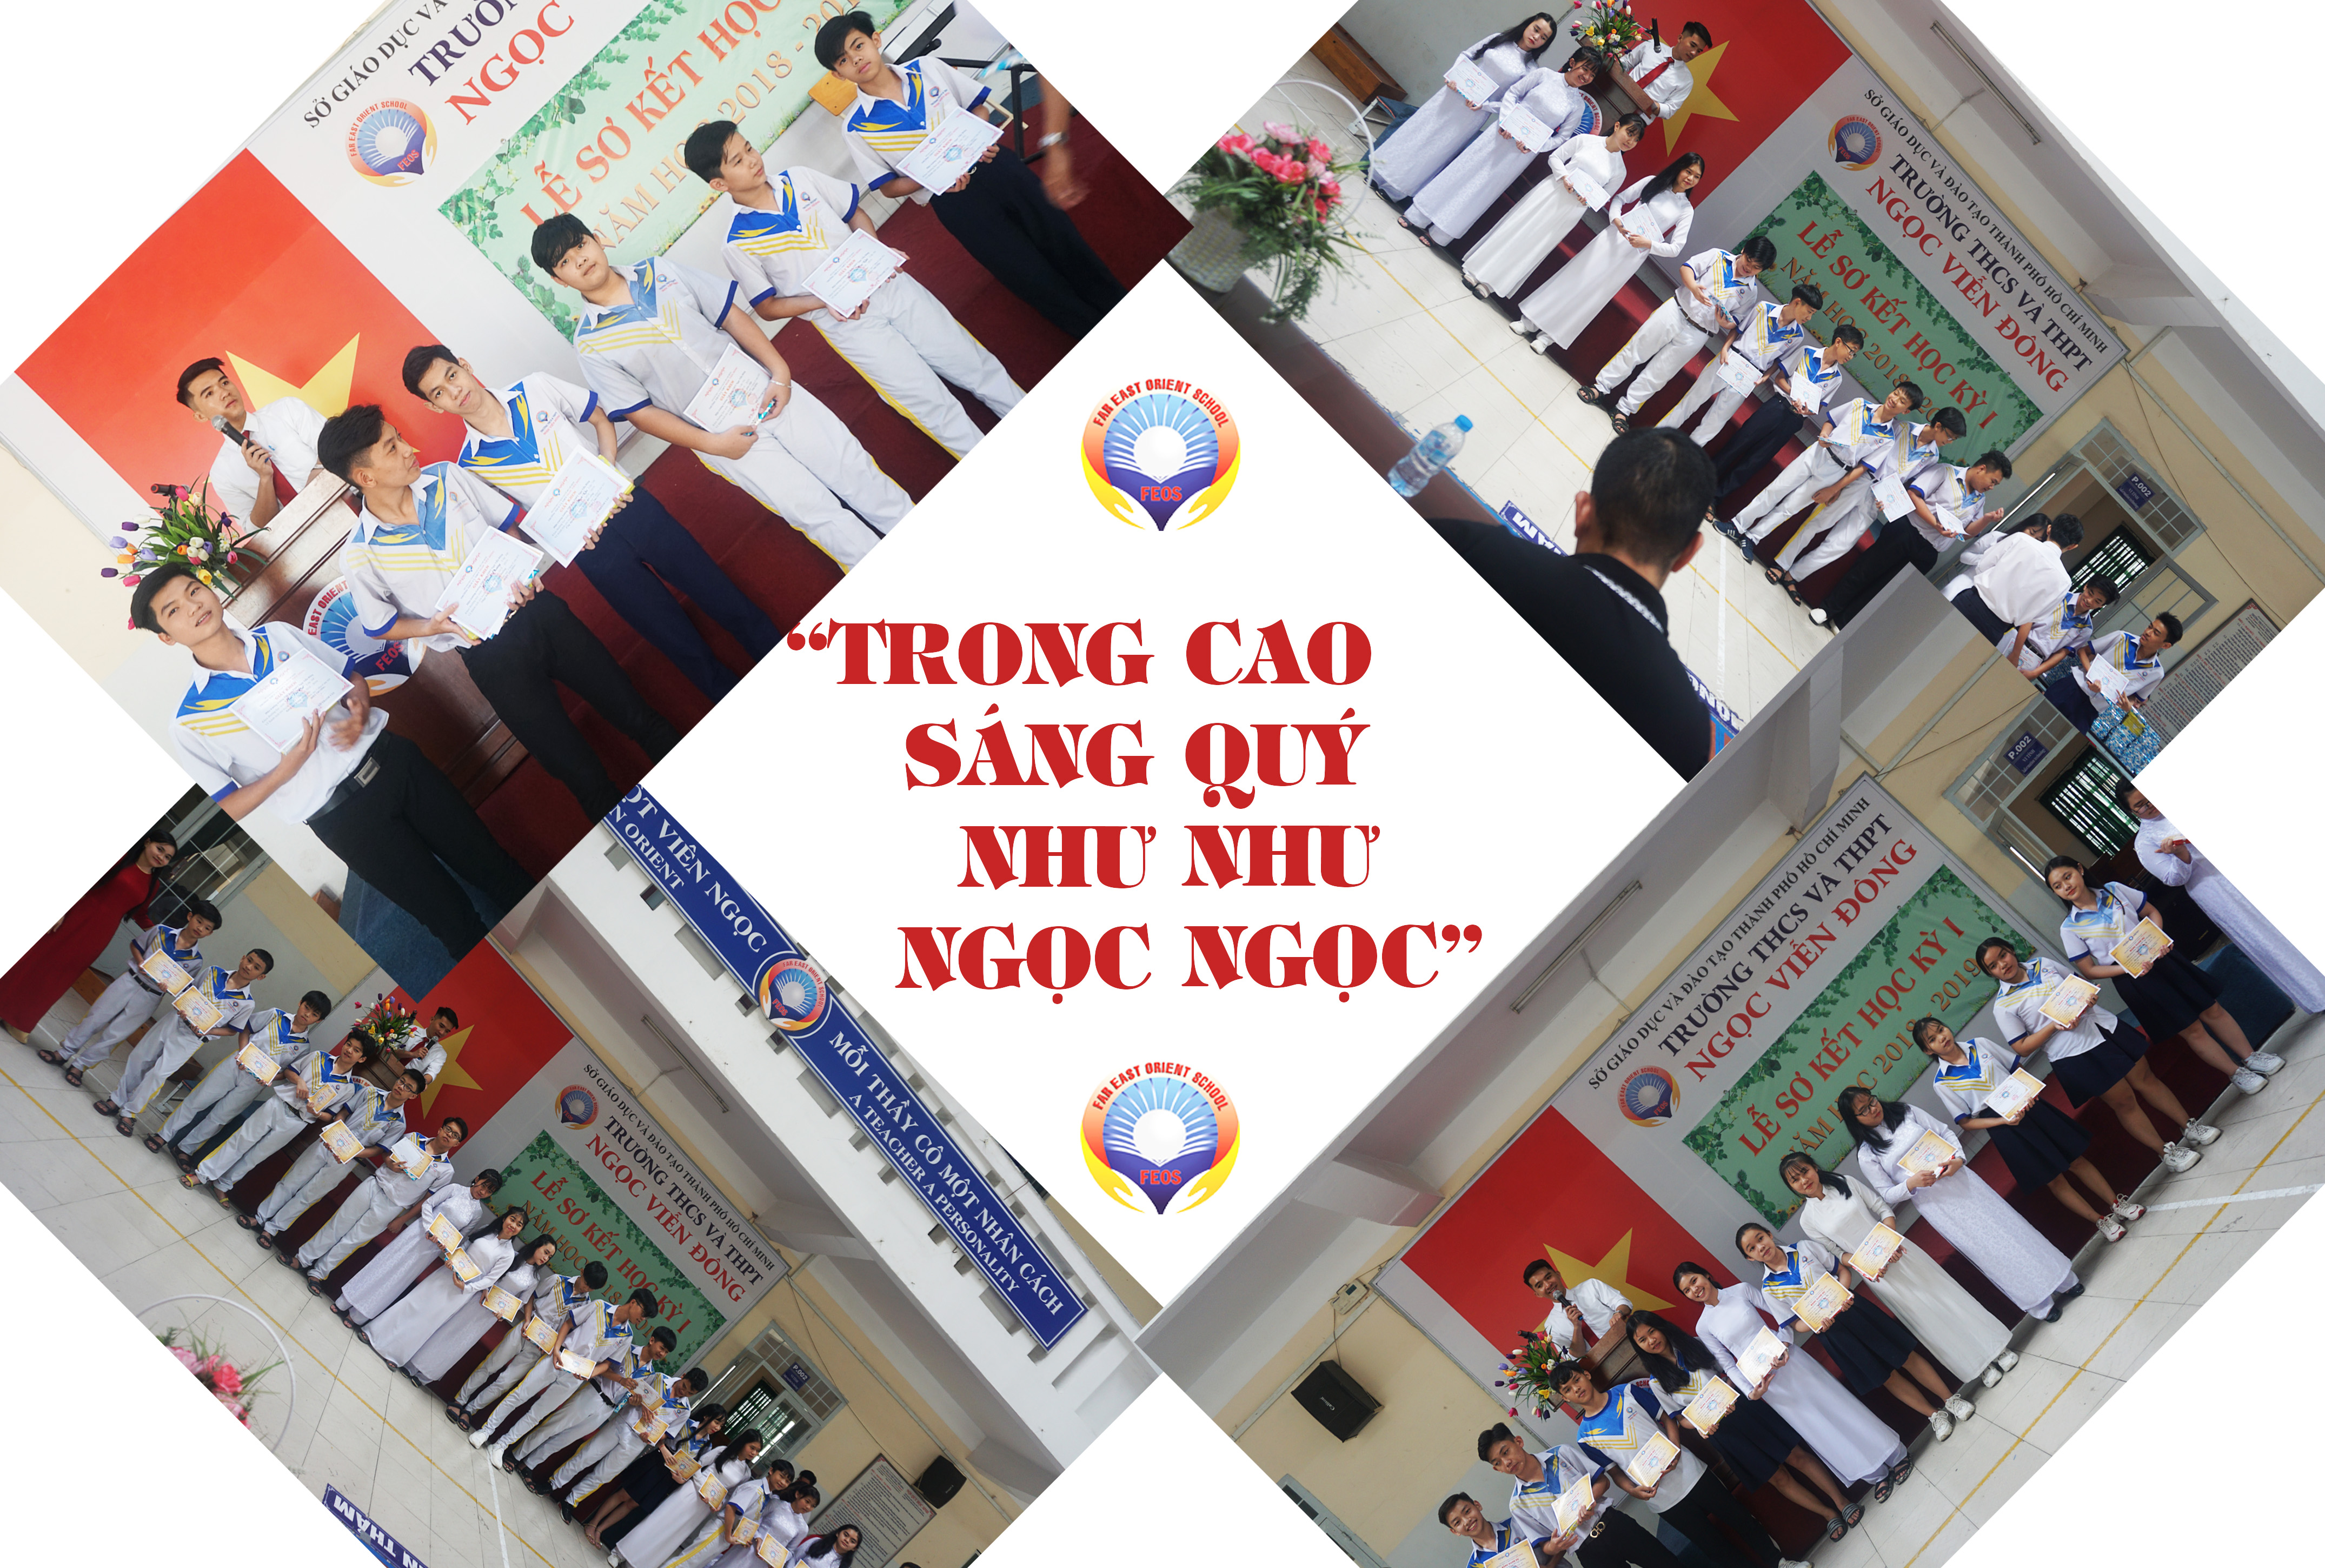 Hình ảnh nhận bằng khen trong lễ sơ kết HKI năm học 2018-2019 của trường THCS và THPT Ngọc Viễn Đông